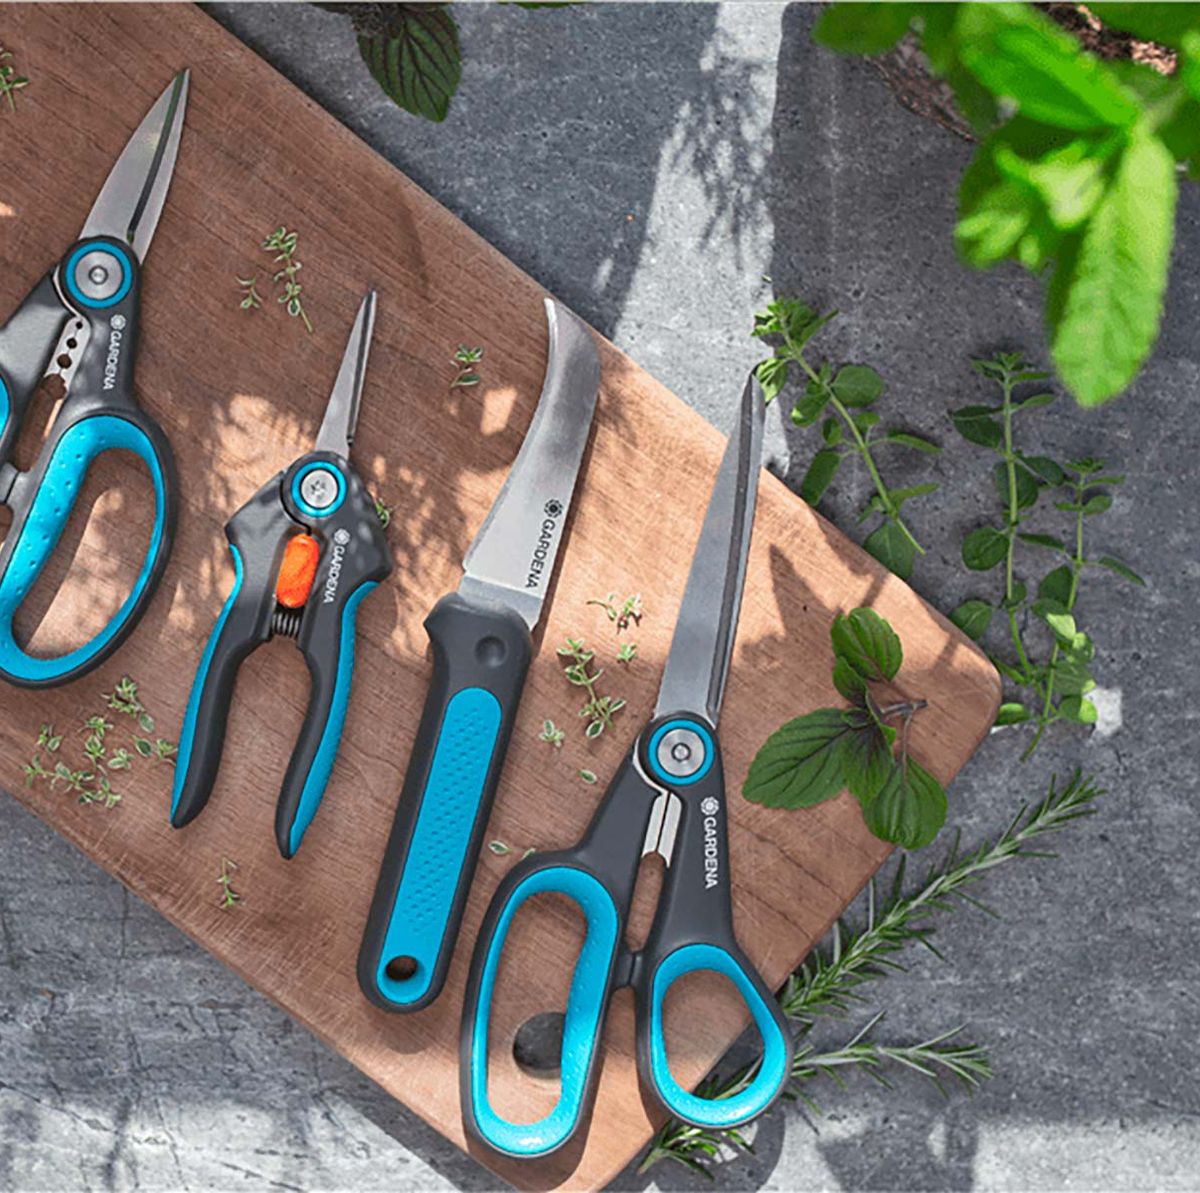 5 herramientas básicas de jardinería - Todo Ferreteria